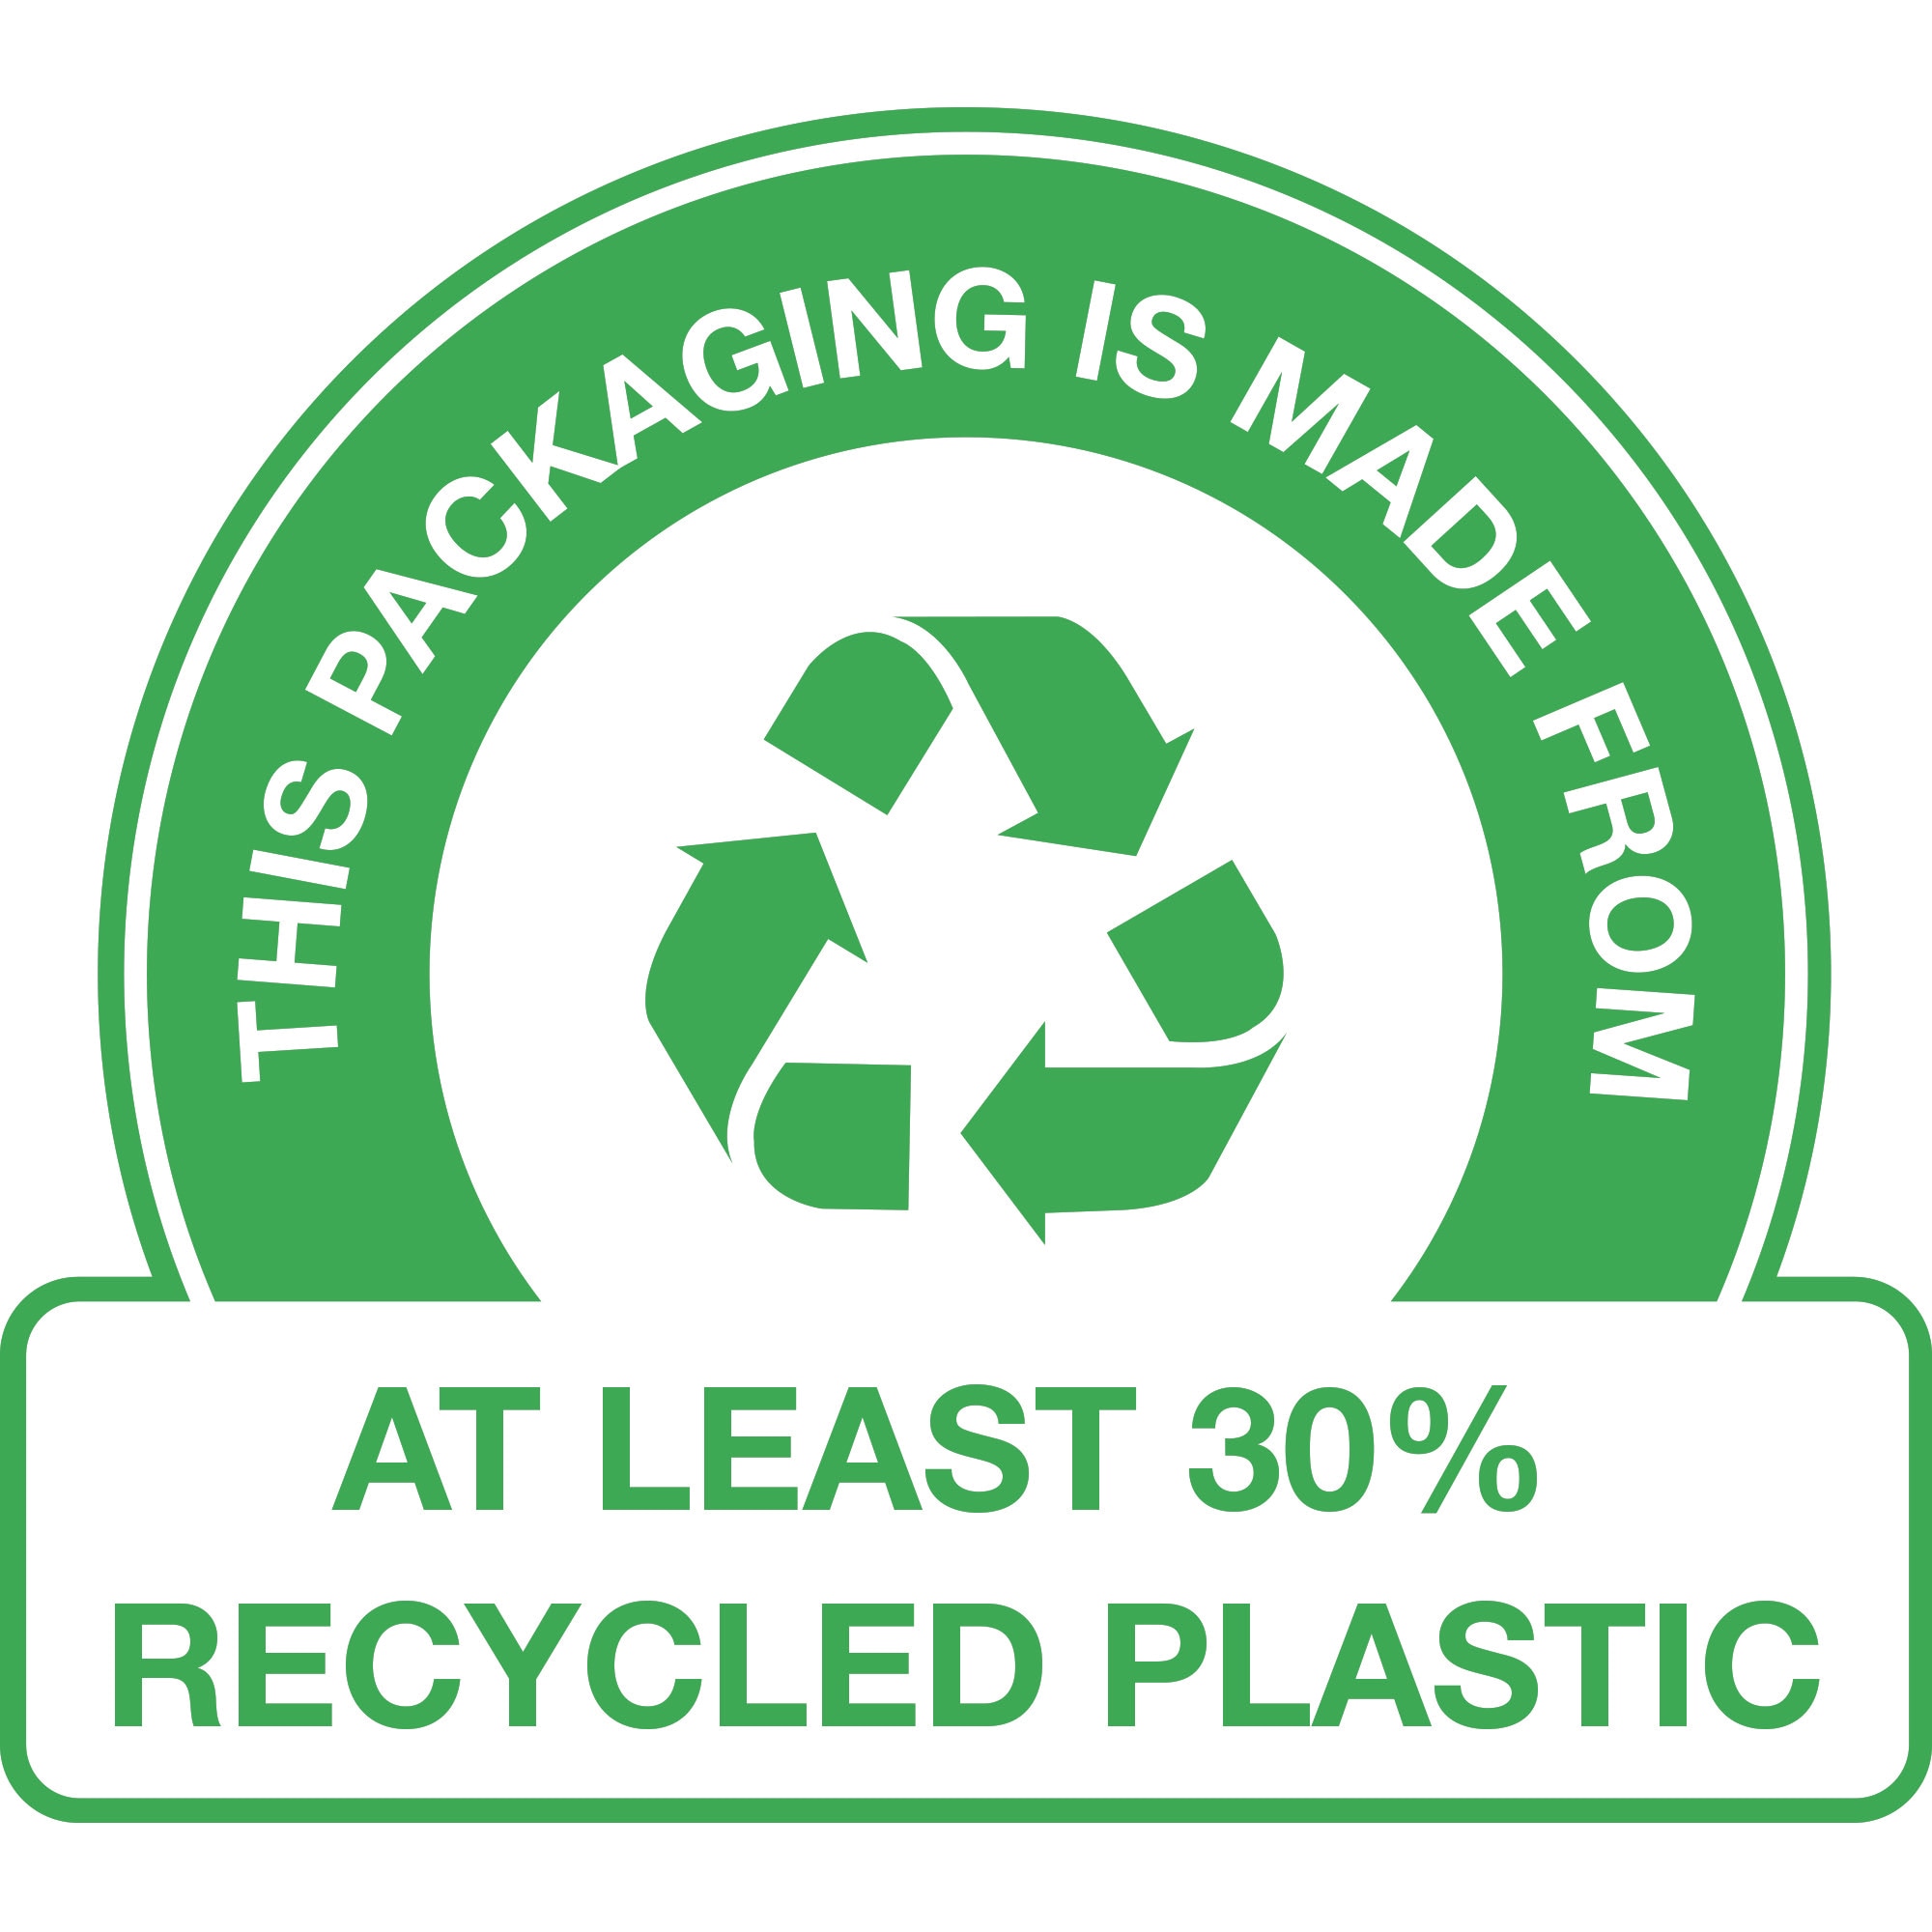 TÄMÄ PAKKAUS ON VALMISTETTU – vähintään 30 % kierrätetystä muovista